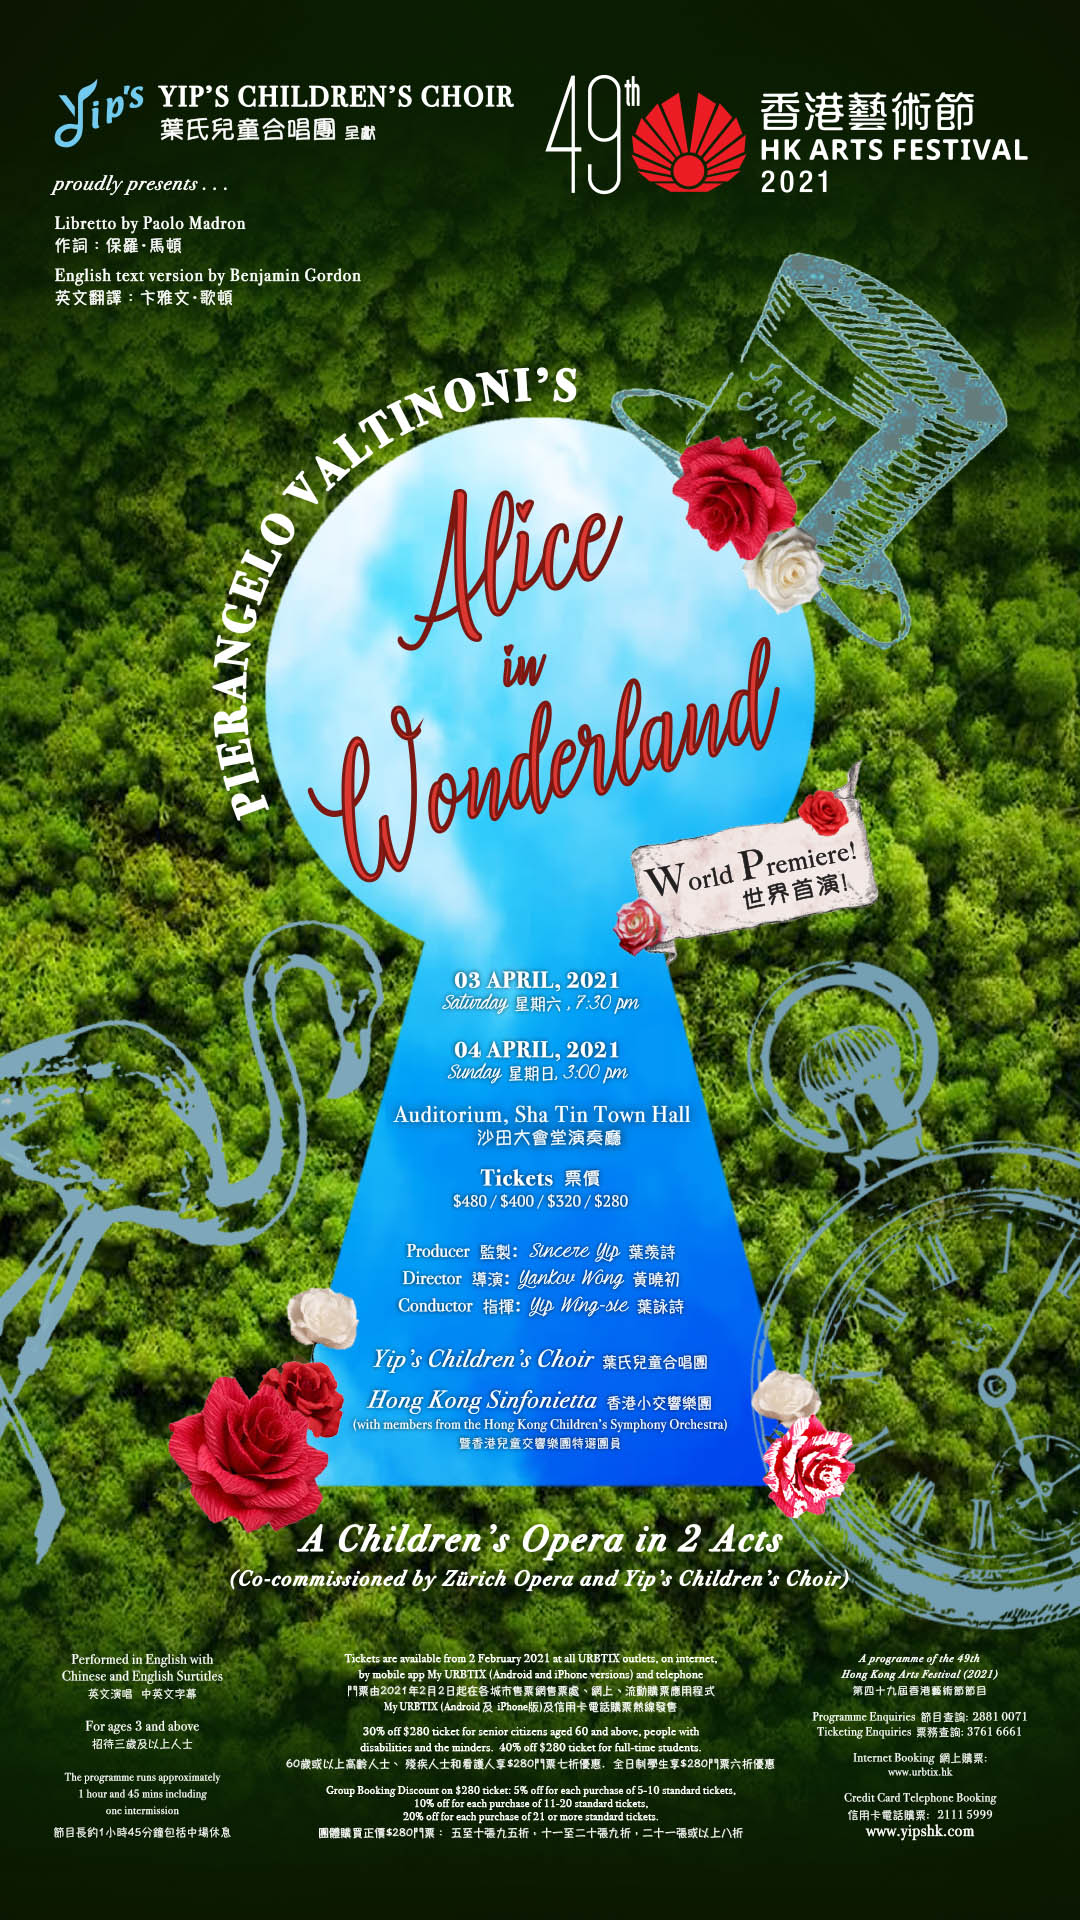 Children's Opera "Alice in Wonderland"